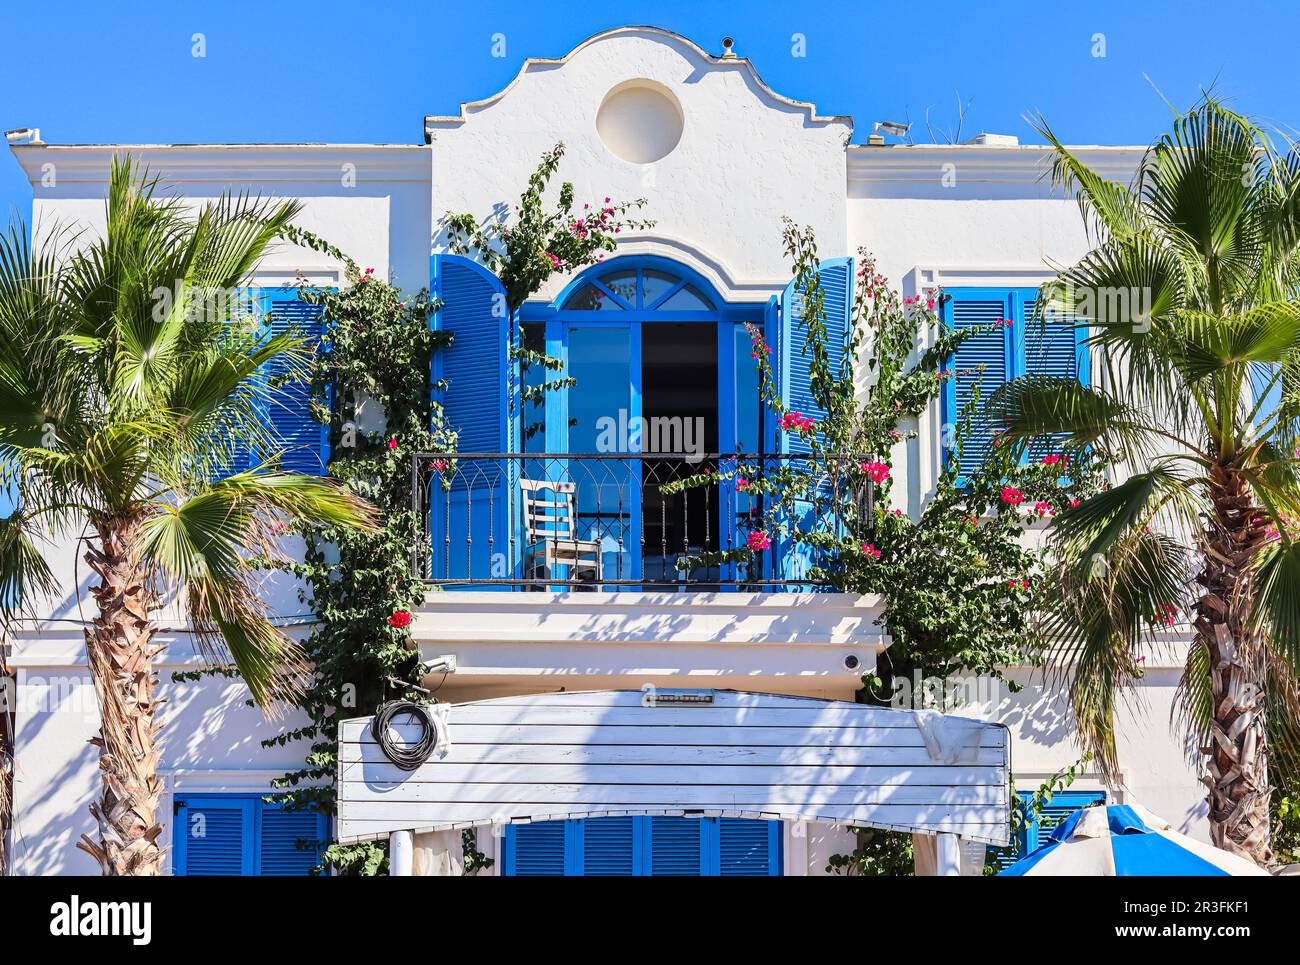 Casa bianca con persiane blu, piante tropicali e palme pittoresche. Destinazione turistica sulla costa dell'Egeo. Foto Stock